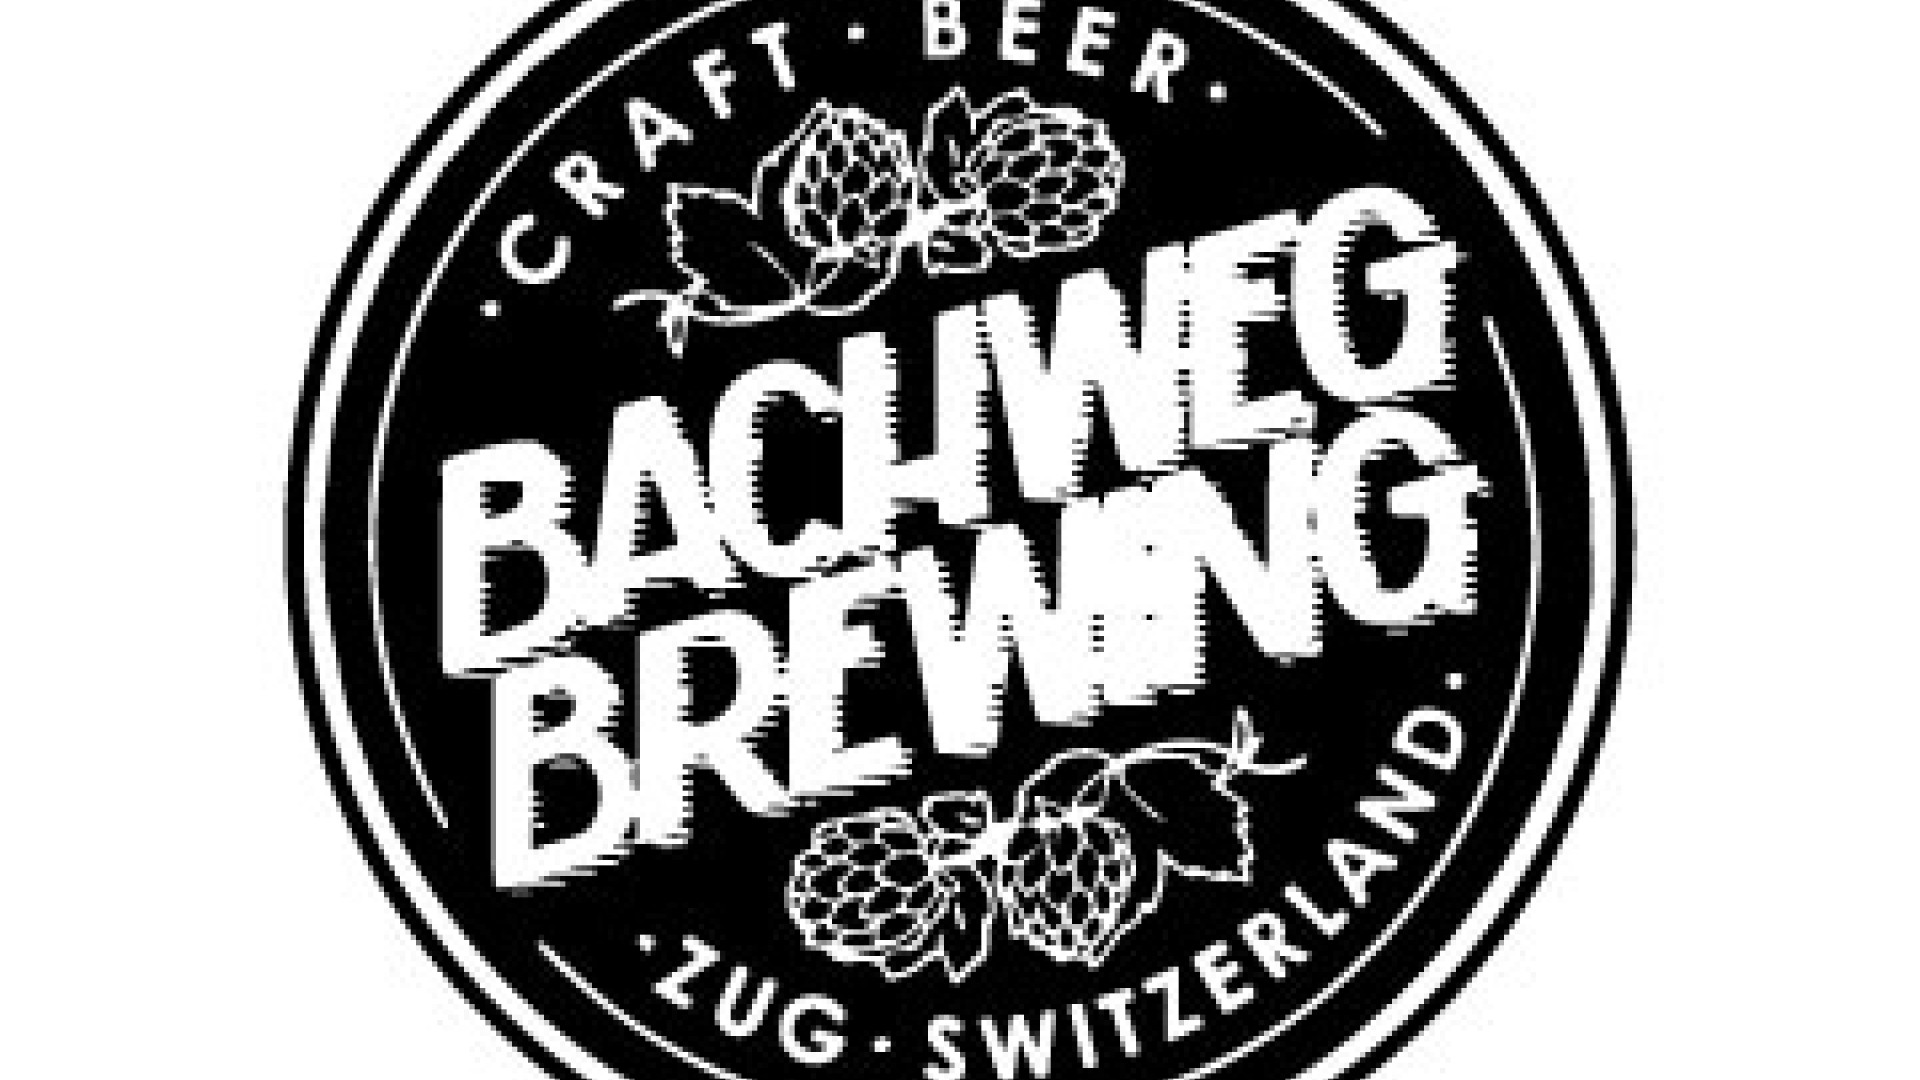 Bachweg Brewing